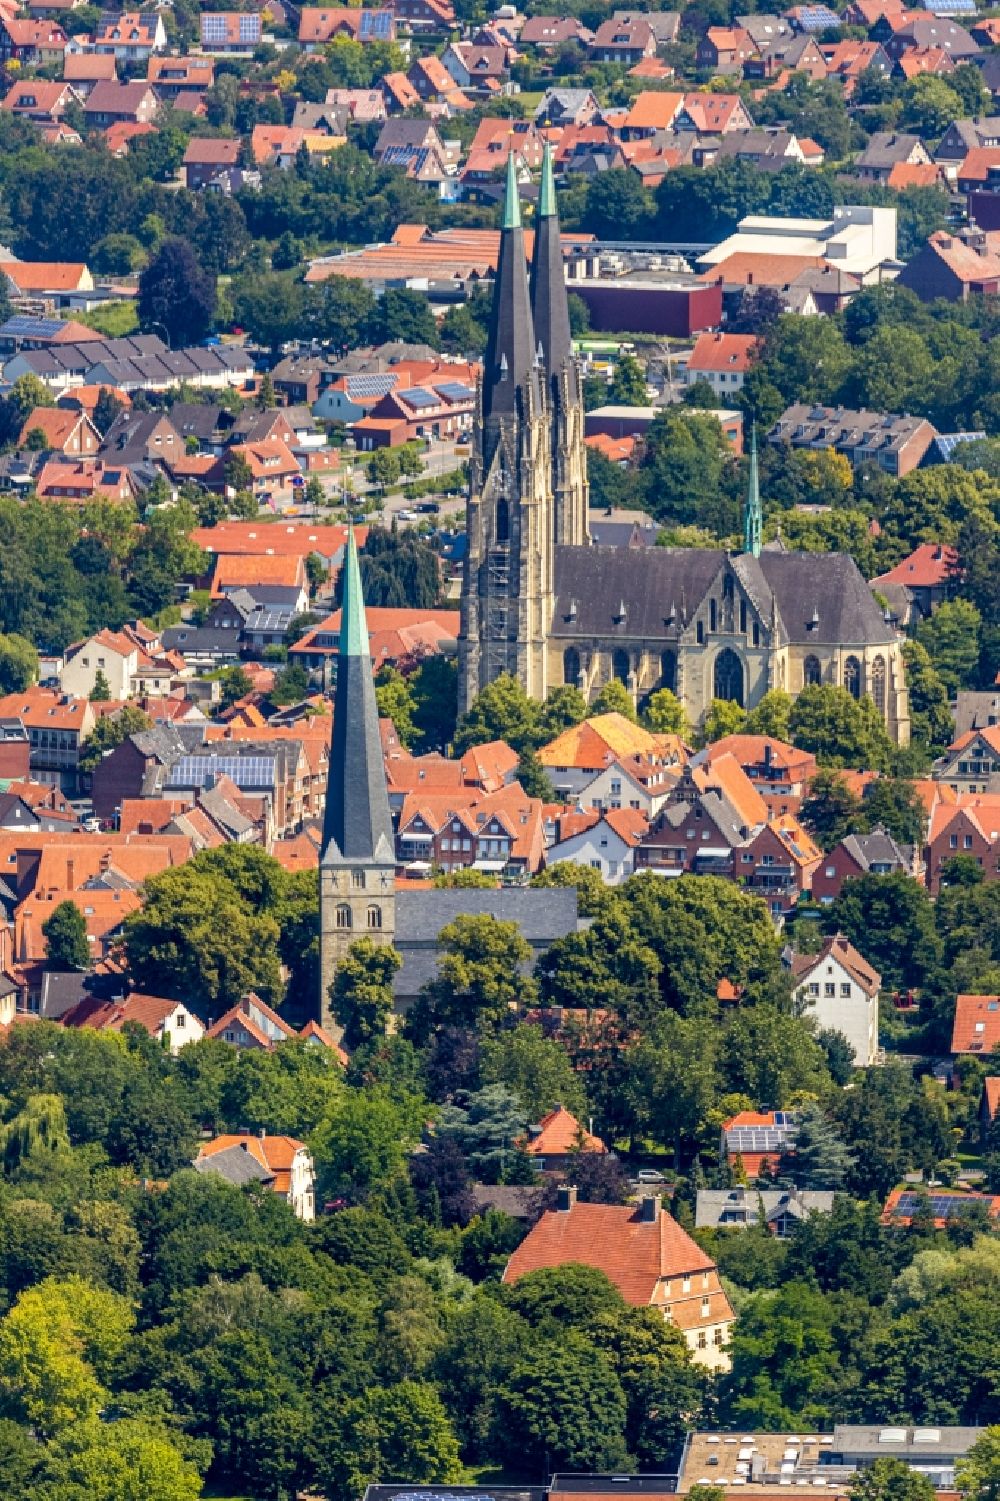 Billerbeck von oben - Kirchengebäude des Domes in der Altstadt in Billerbeck im Bundesland Nordrhein-Westfalen, Deutschland